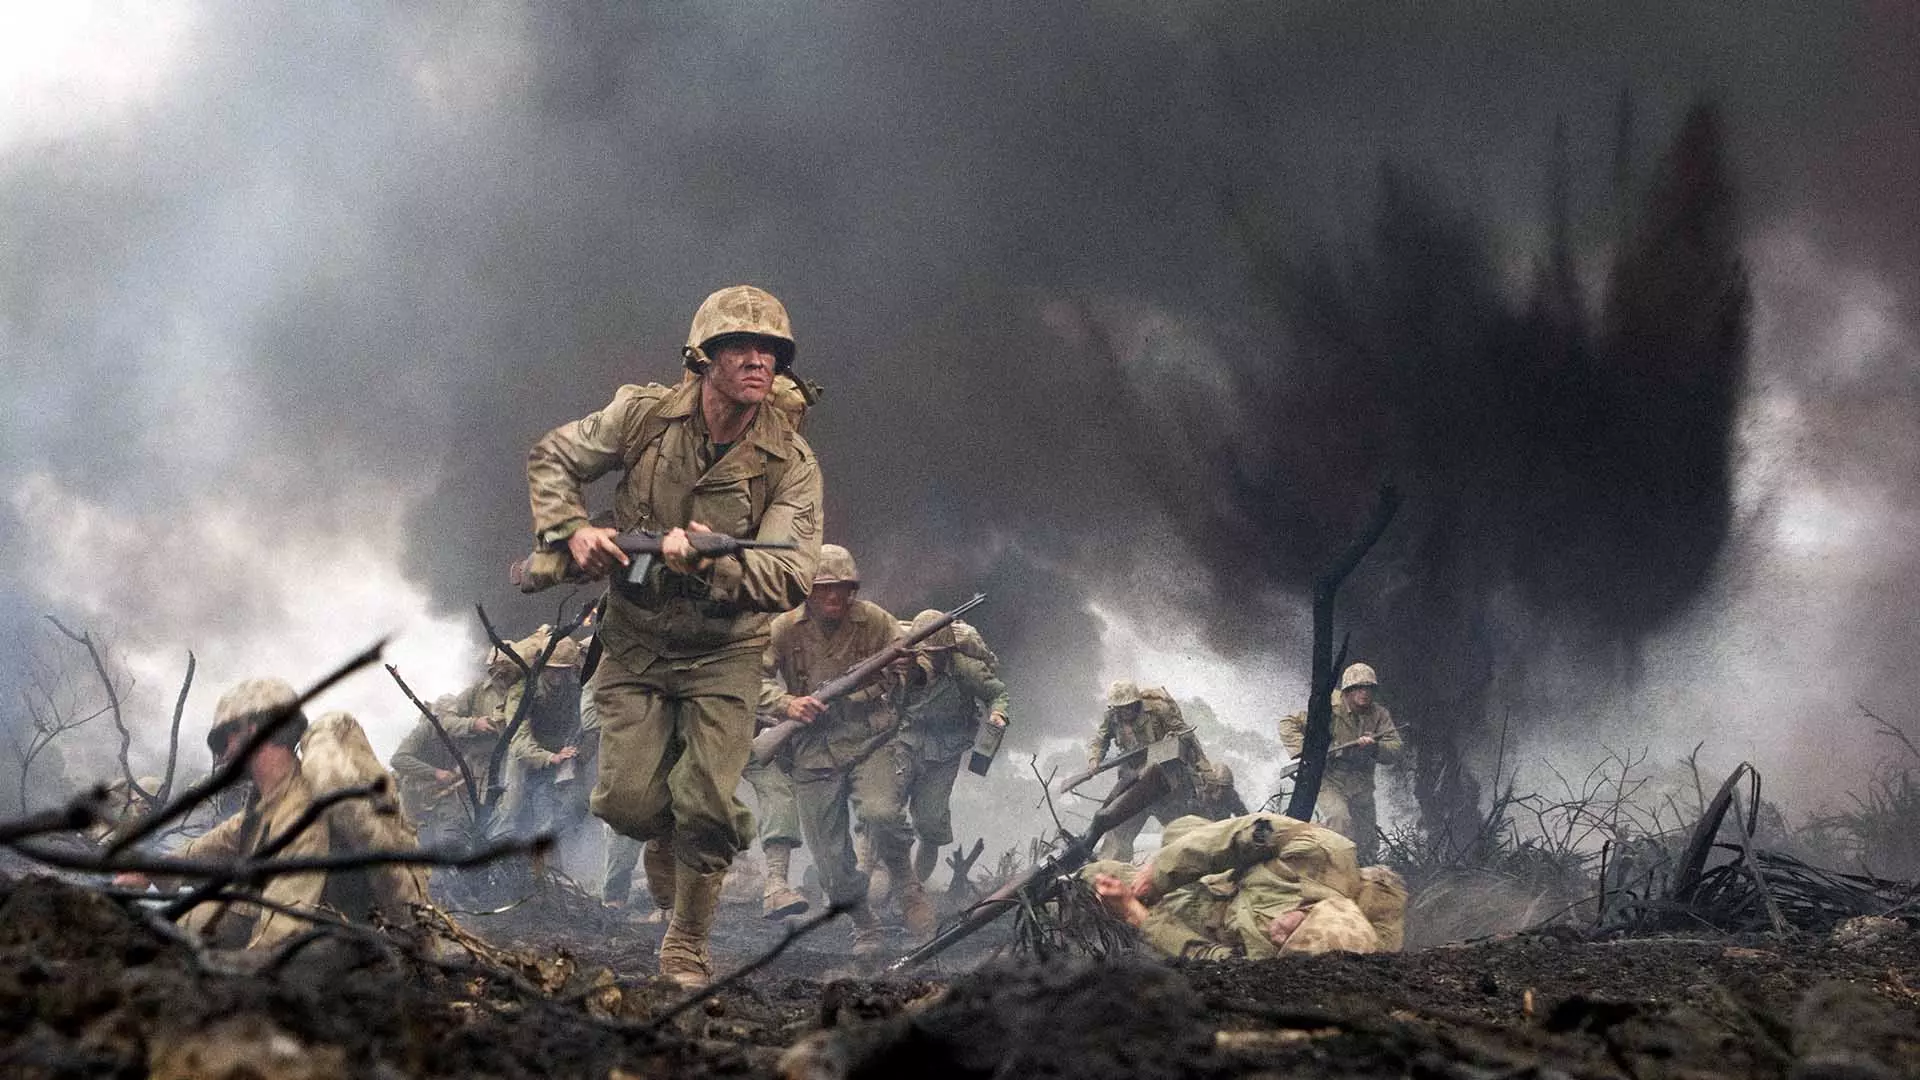 سربازی در حال دویدن در میدان جنگ در مینی سریال The Pacific